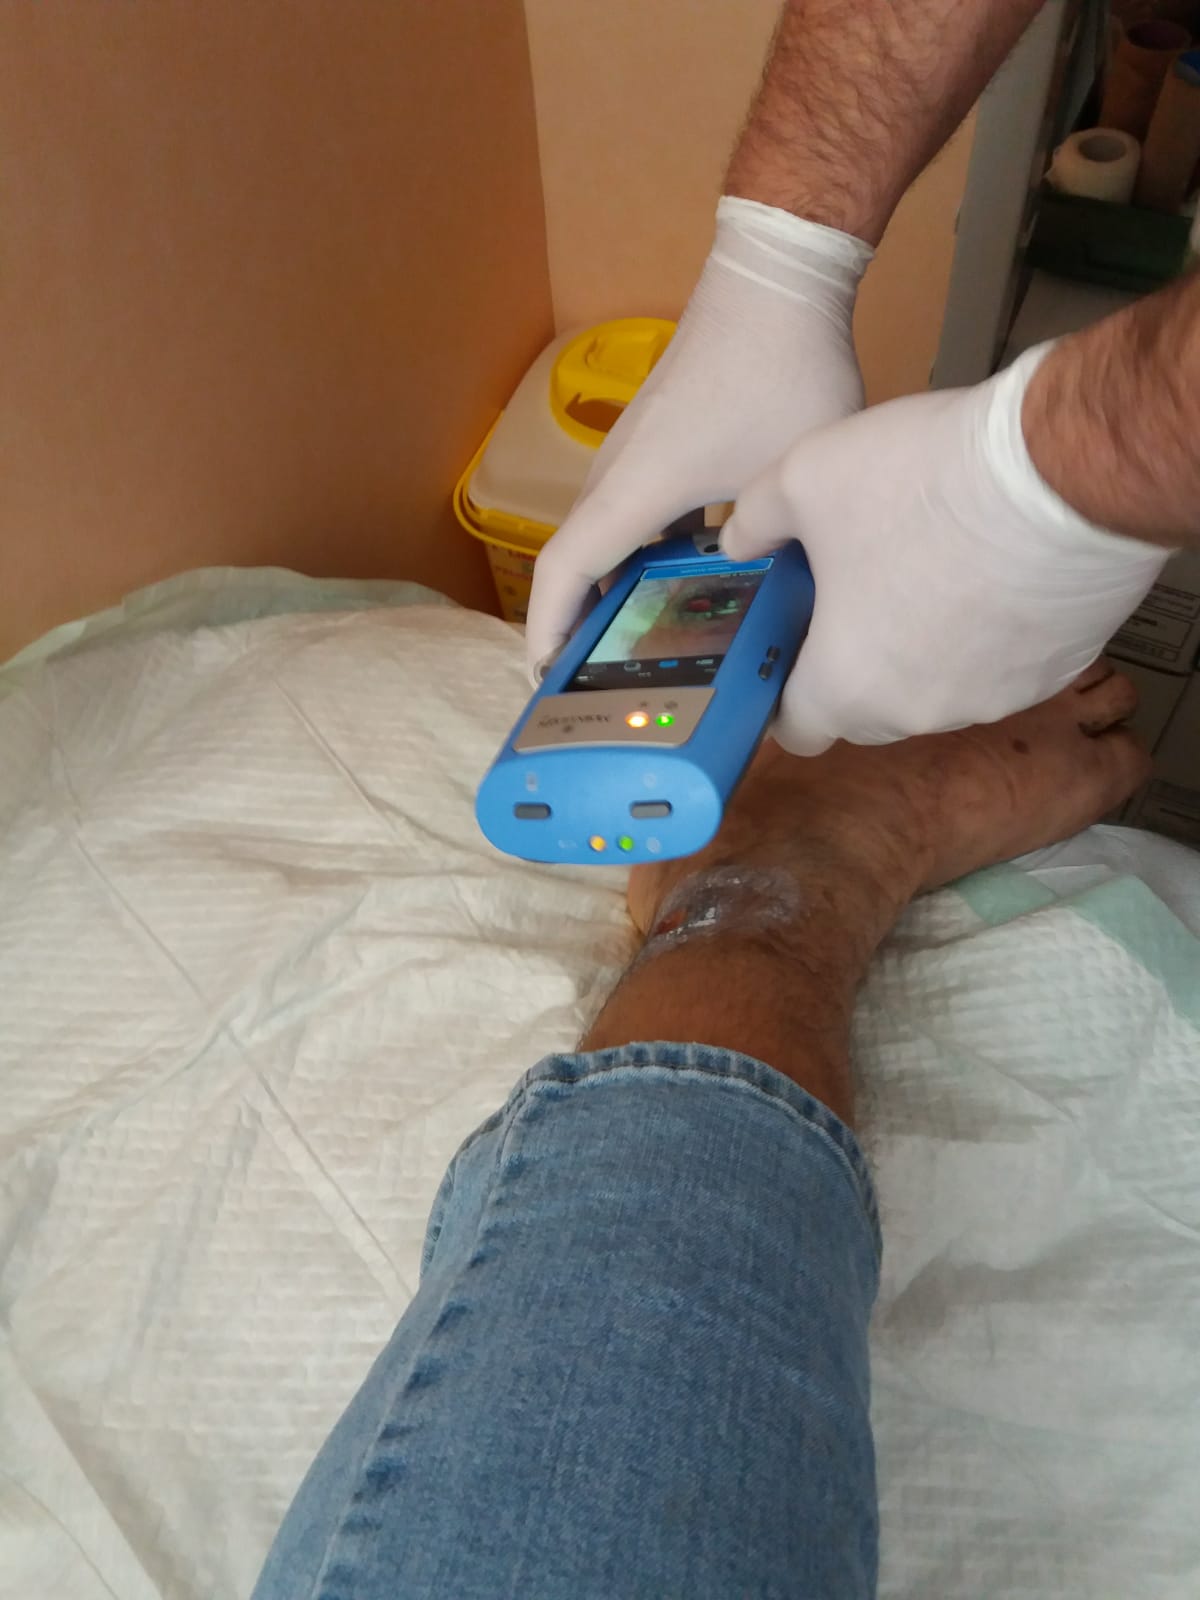  El hospital Santa Lucía pone en marcha un sistema innovador para detectar de manera precoz las infecciones en heridas crónicas 